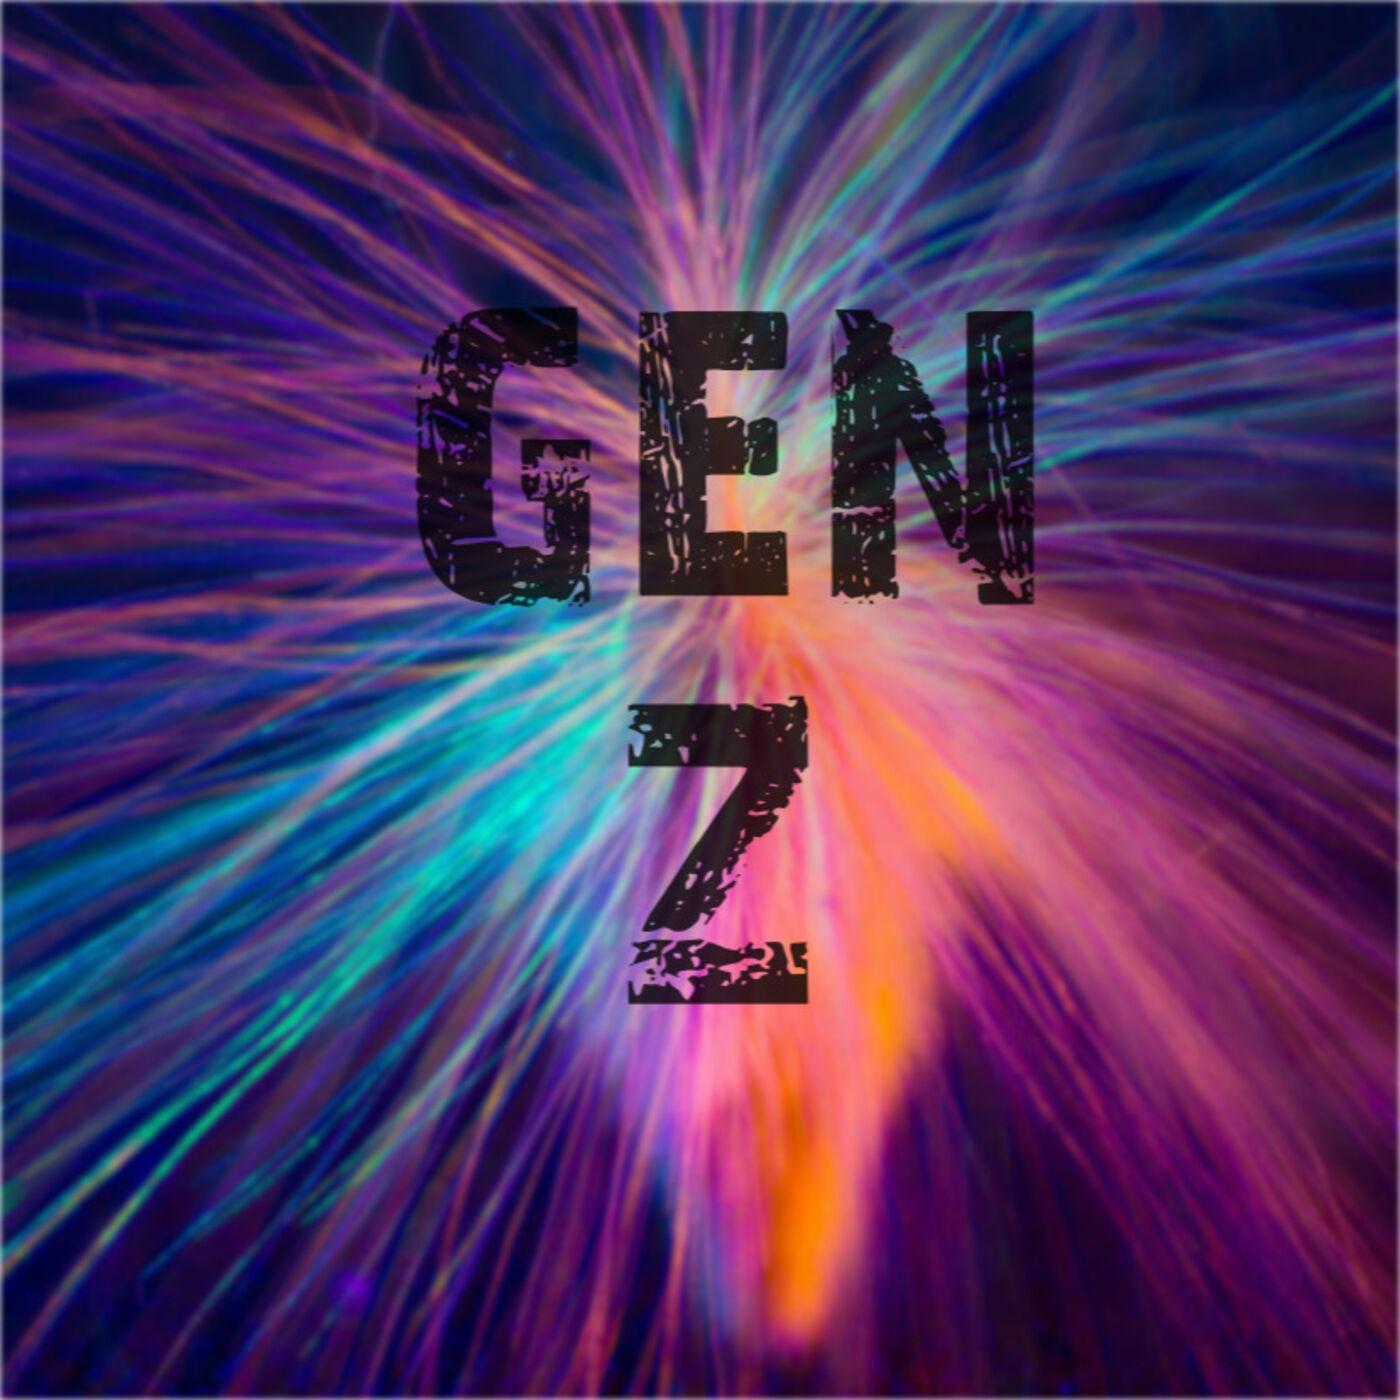 GEN Z